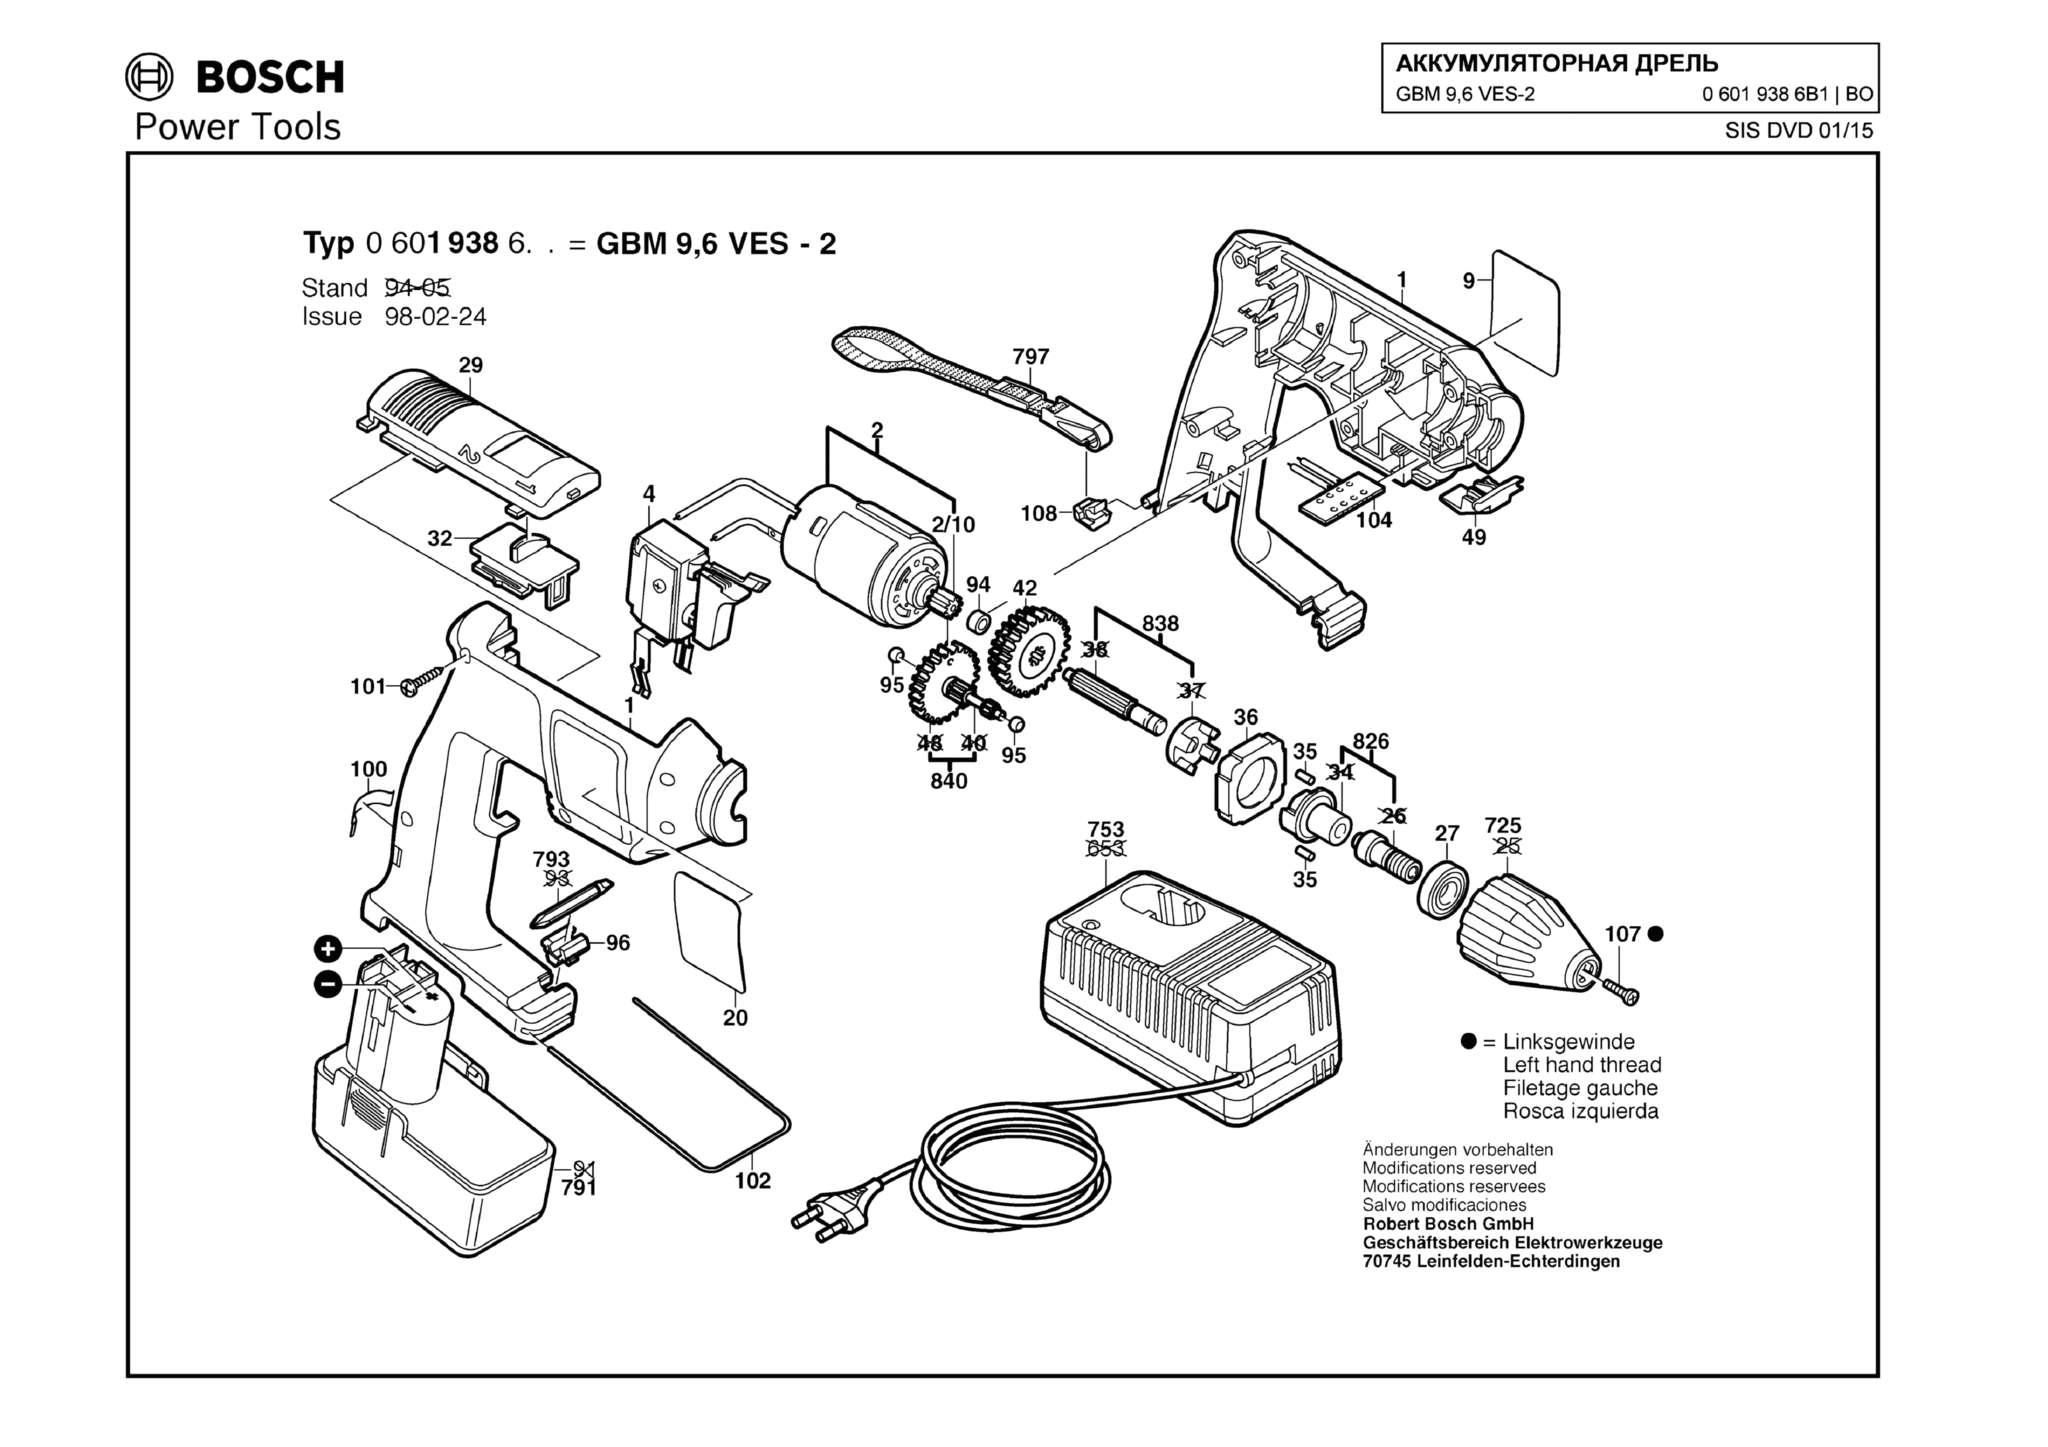 Запчасти, схема и деталировка Bosch GBM 9,6 VES-2 (ТИП 06019386B1)